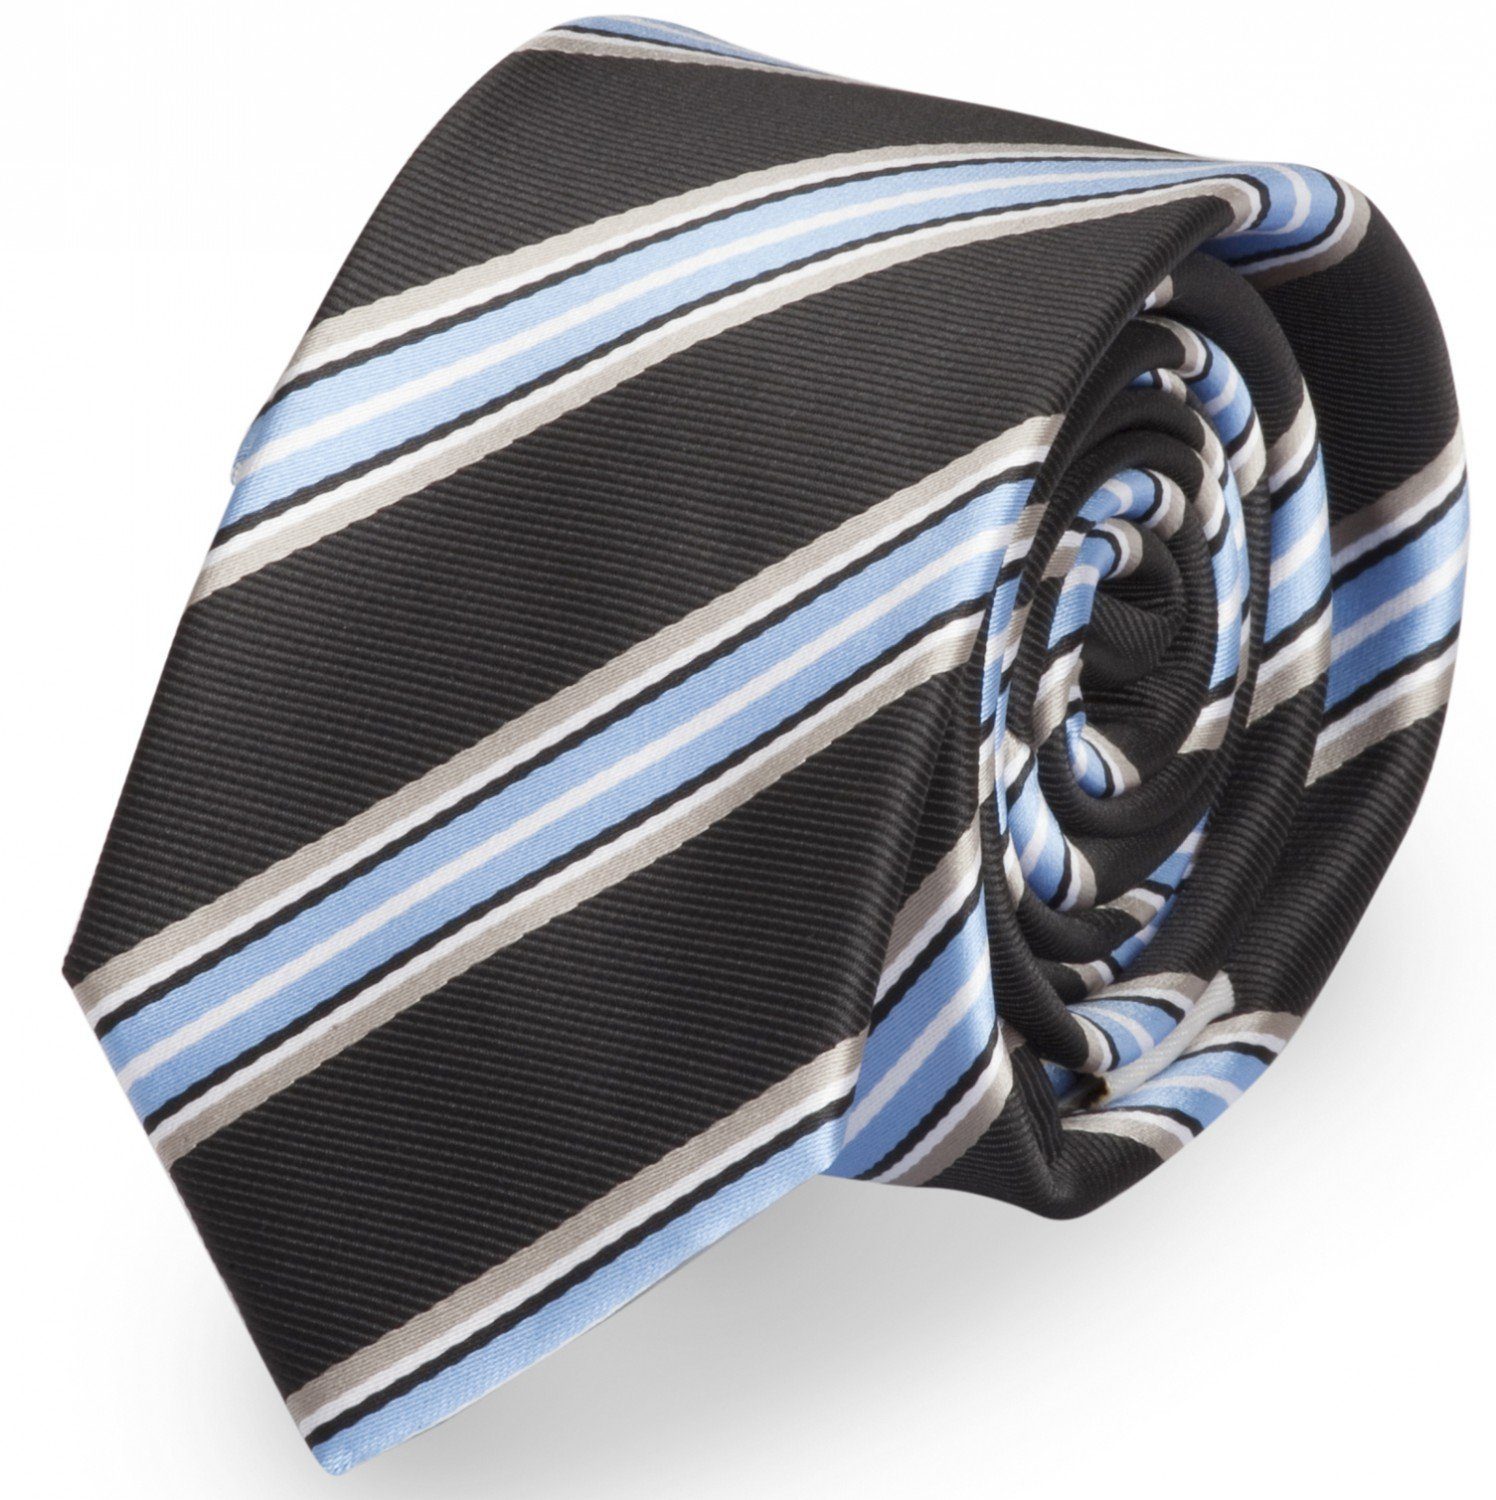 Breite oder Box, Breit 8cm Fabio - Gestreift) Krawatte (ohne Krawatte Farini mit (8cm), gestreifte Blau/Grau/Schwarz/Weiß in Streifen Tie 6cm Herren